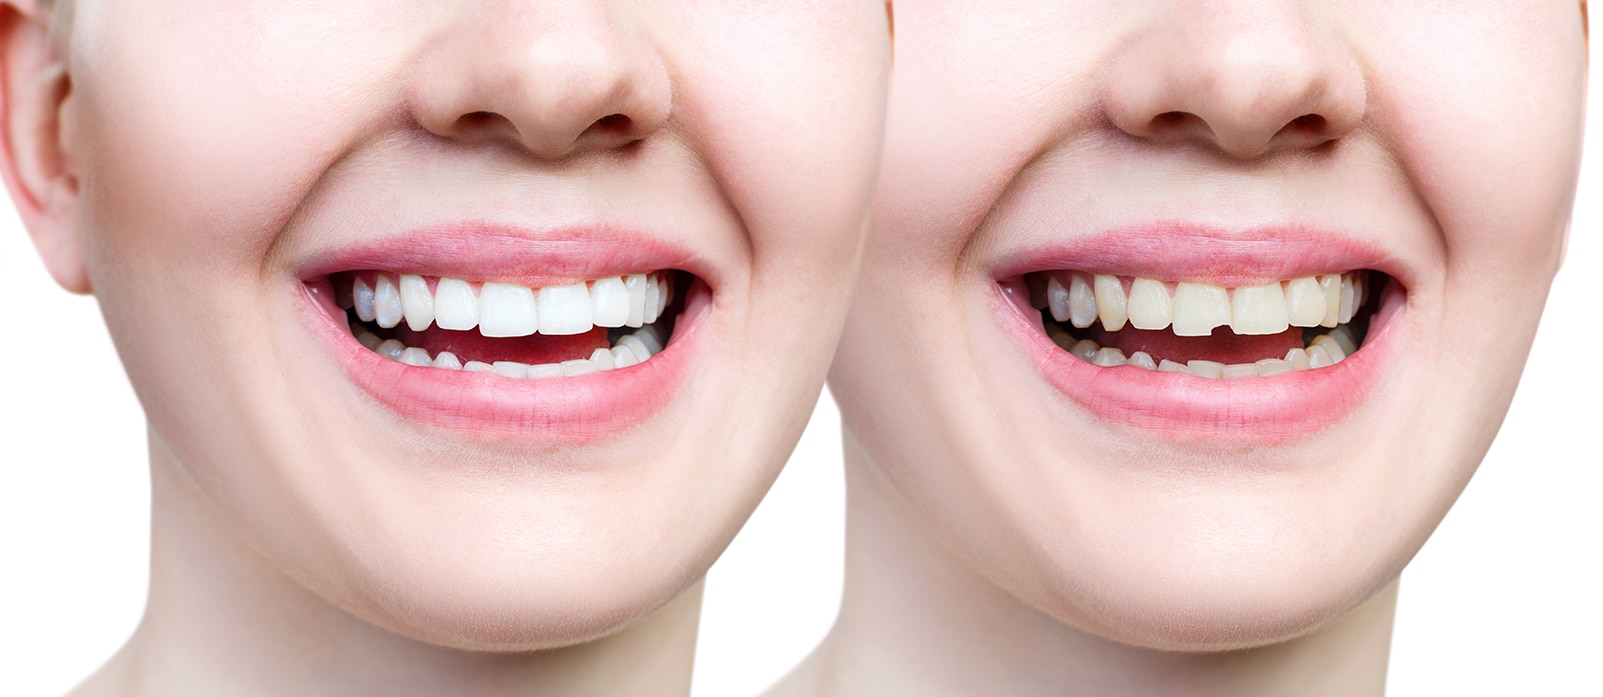 Understanding Broken Teeth Repair Cost in India